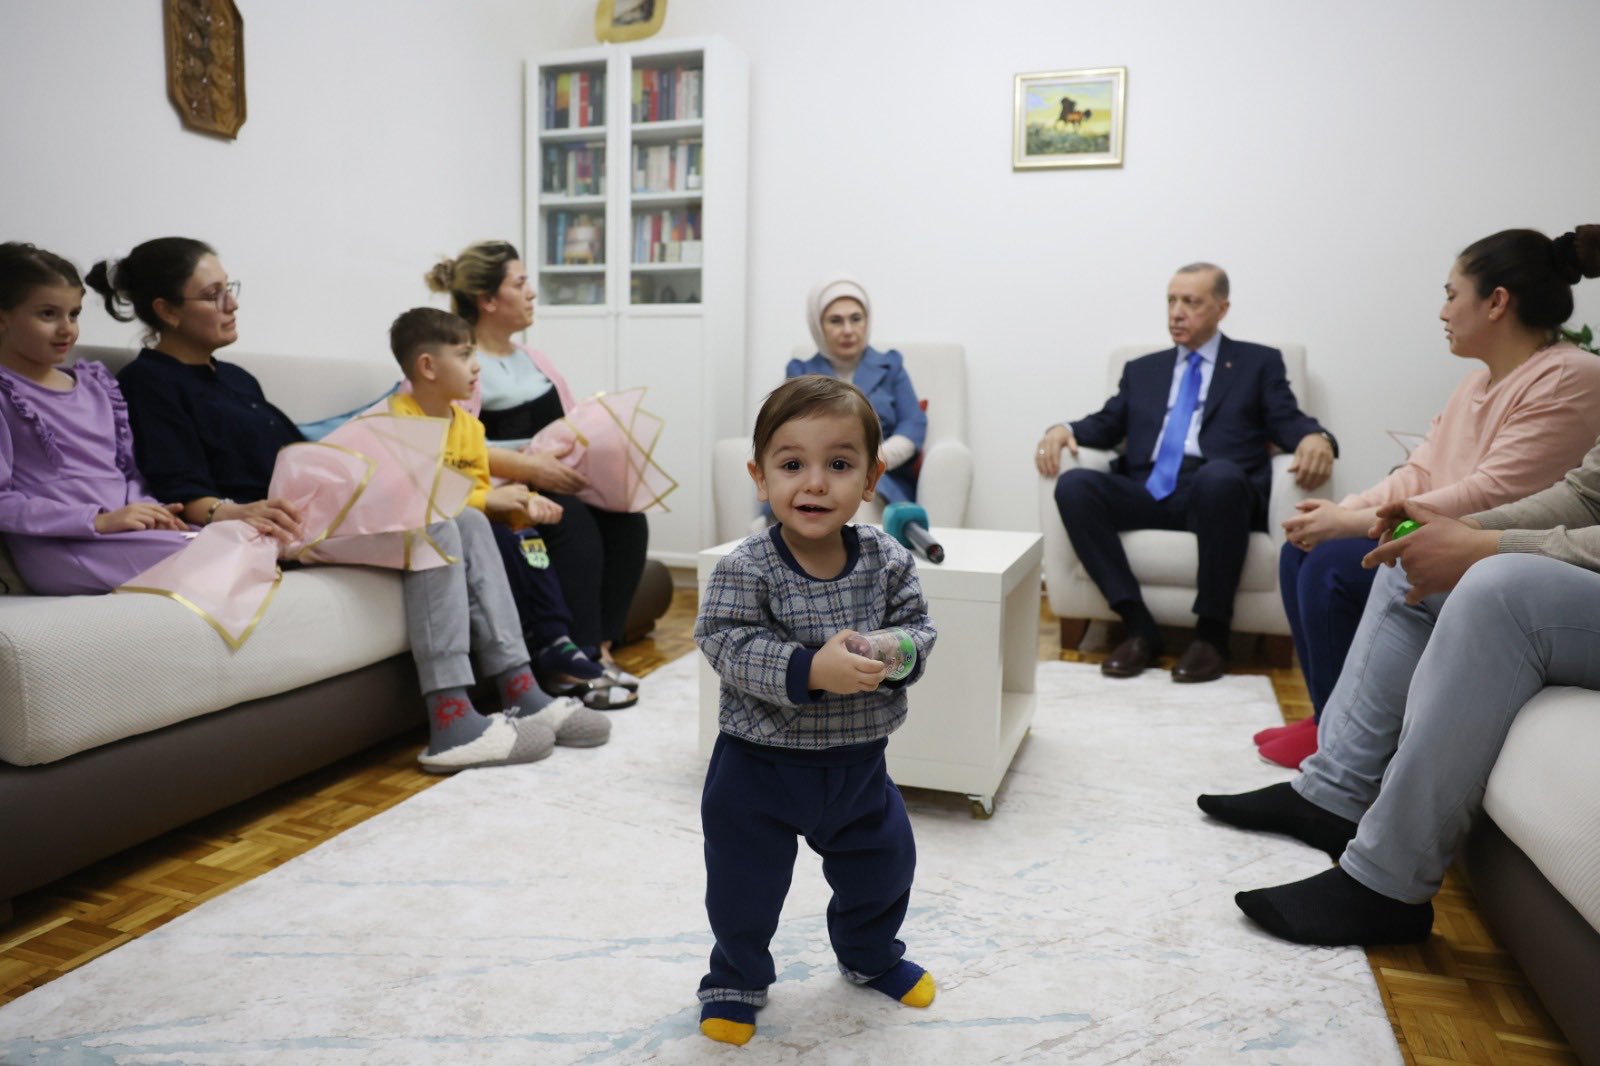 Cumhurbaşkanı Erdoğan, afetzede Hülya Çelebi ve ailesini Ankara'da yerleştikleri evde ziyaret etti.